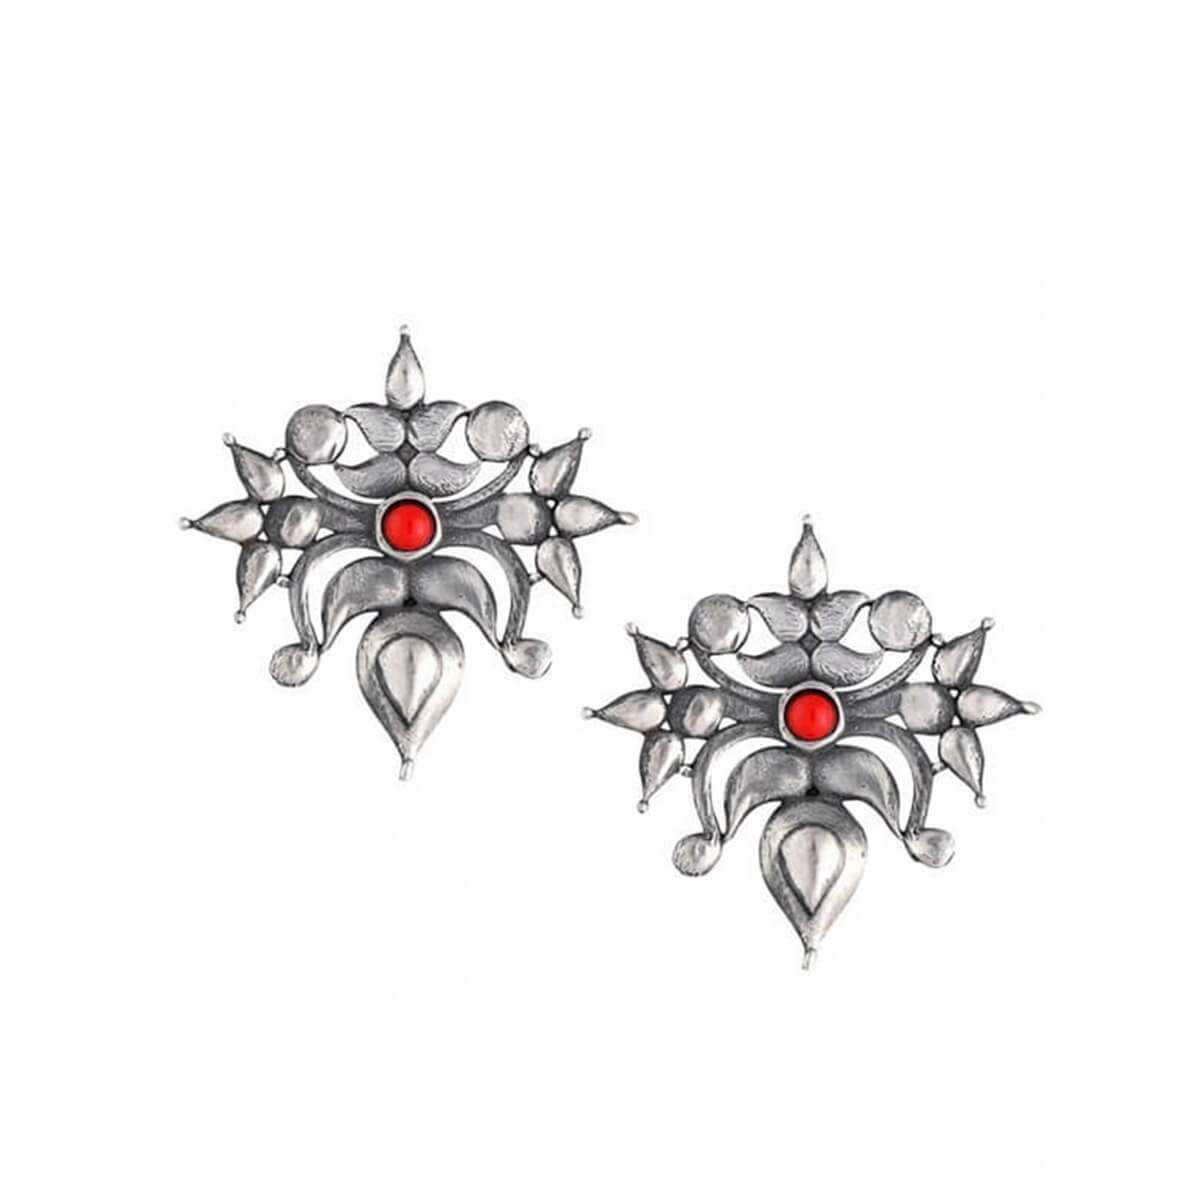 Toranful Rathika Silver Ear Studs -Coral - Silver Earrings Online - MohabyGeetanjali  